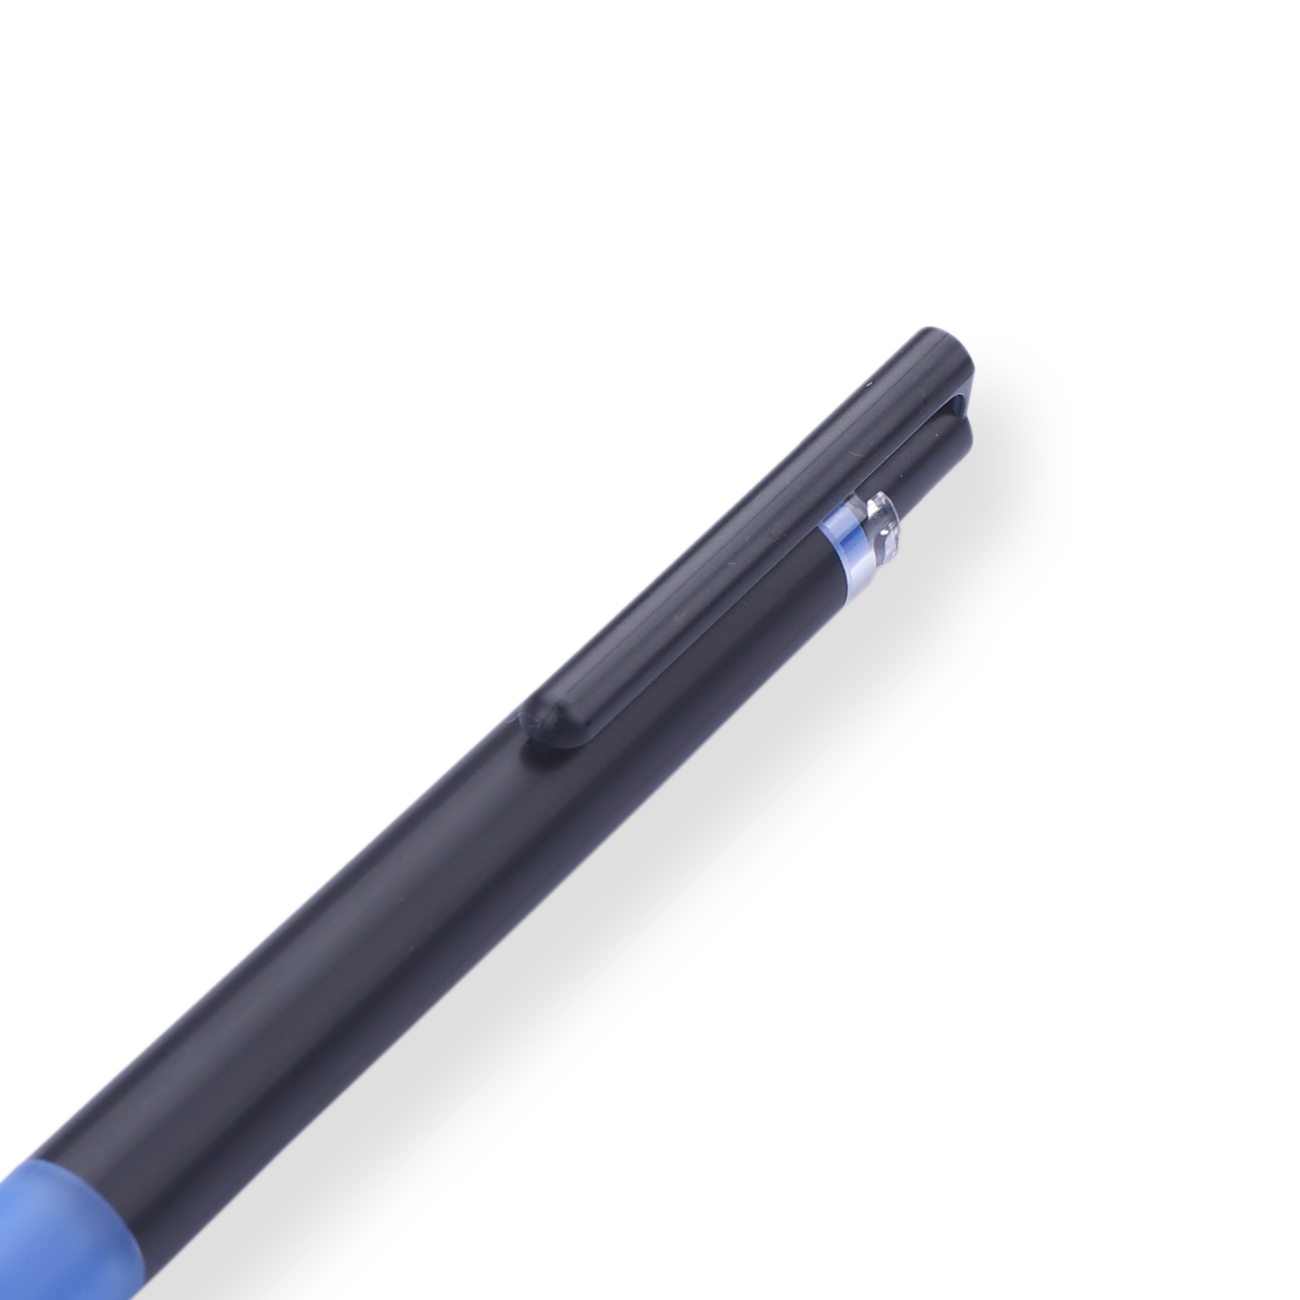 Pilot Juice Up Gel Pen - 0.4 mm - Blue